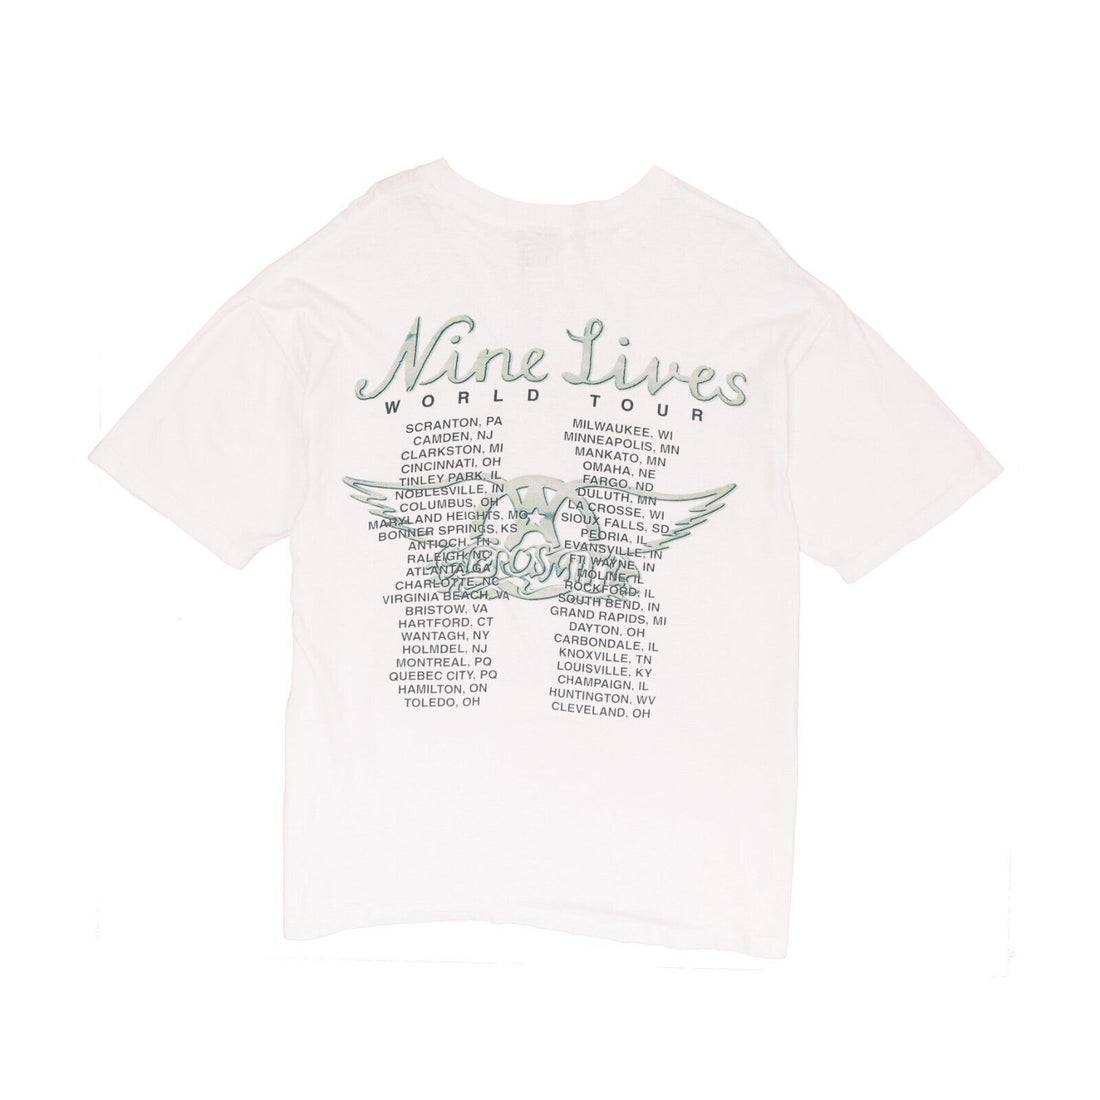 Vintage Aerosmith Nine Lives Tour Giant T-Shirt Size XL White Band Tee 1997 90s